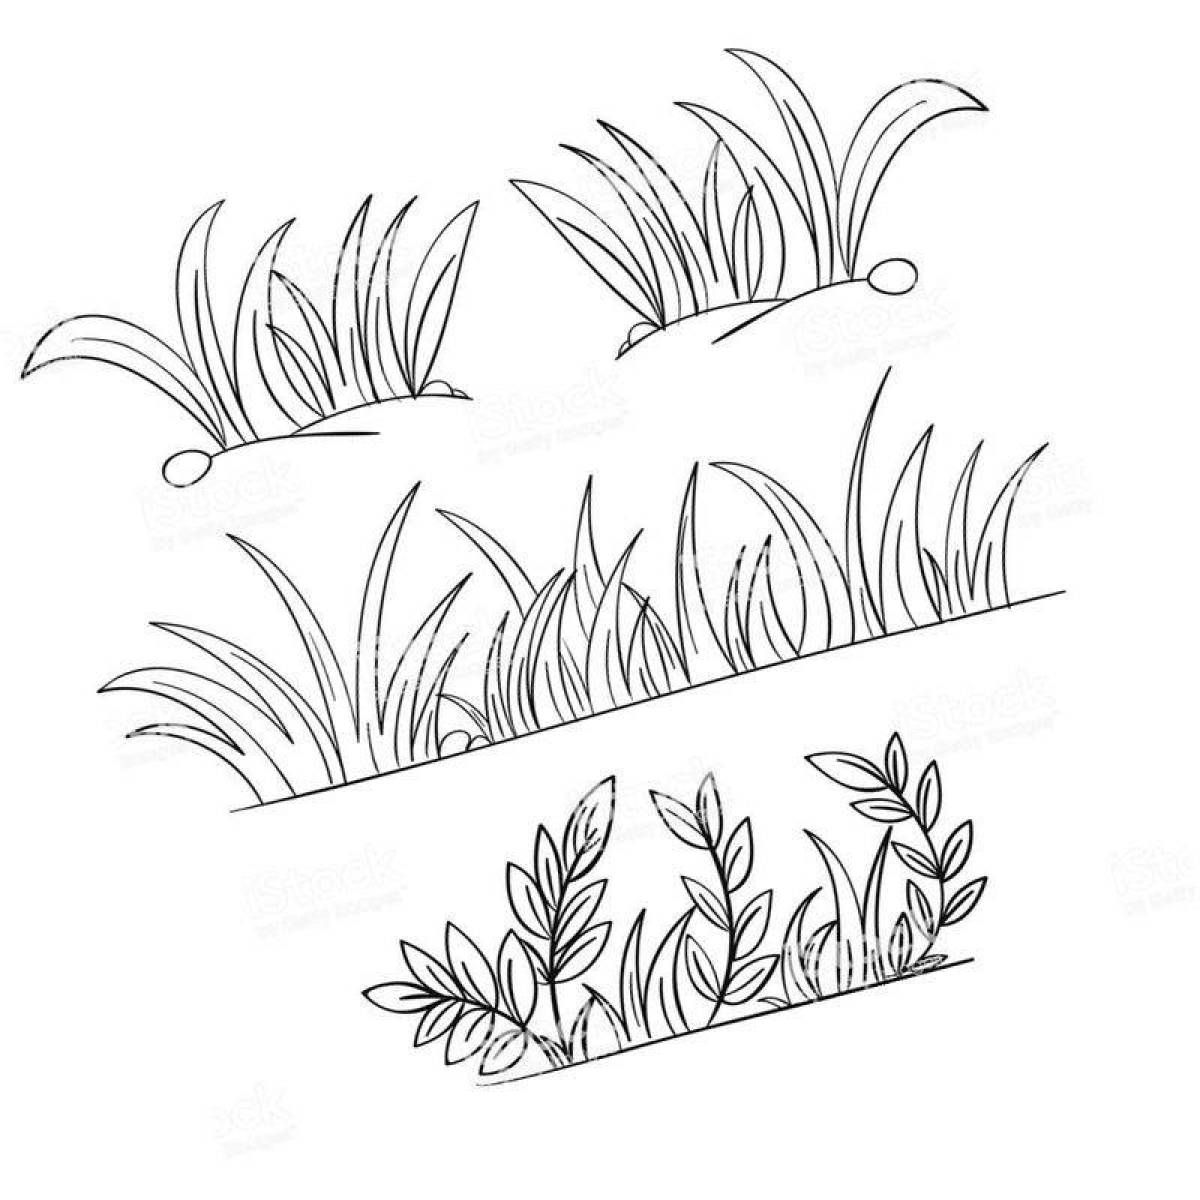 Grass #20